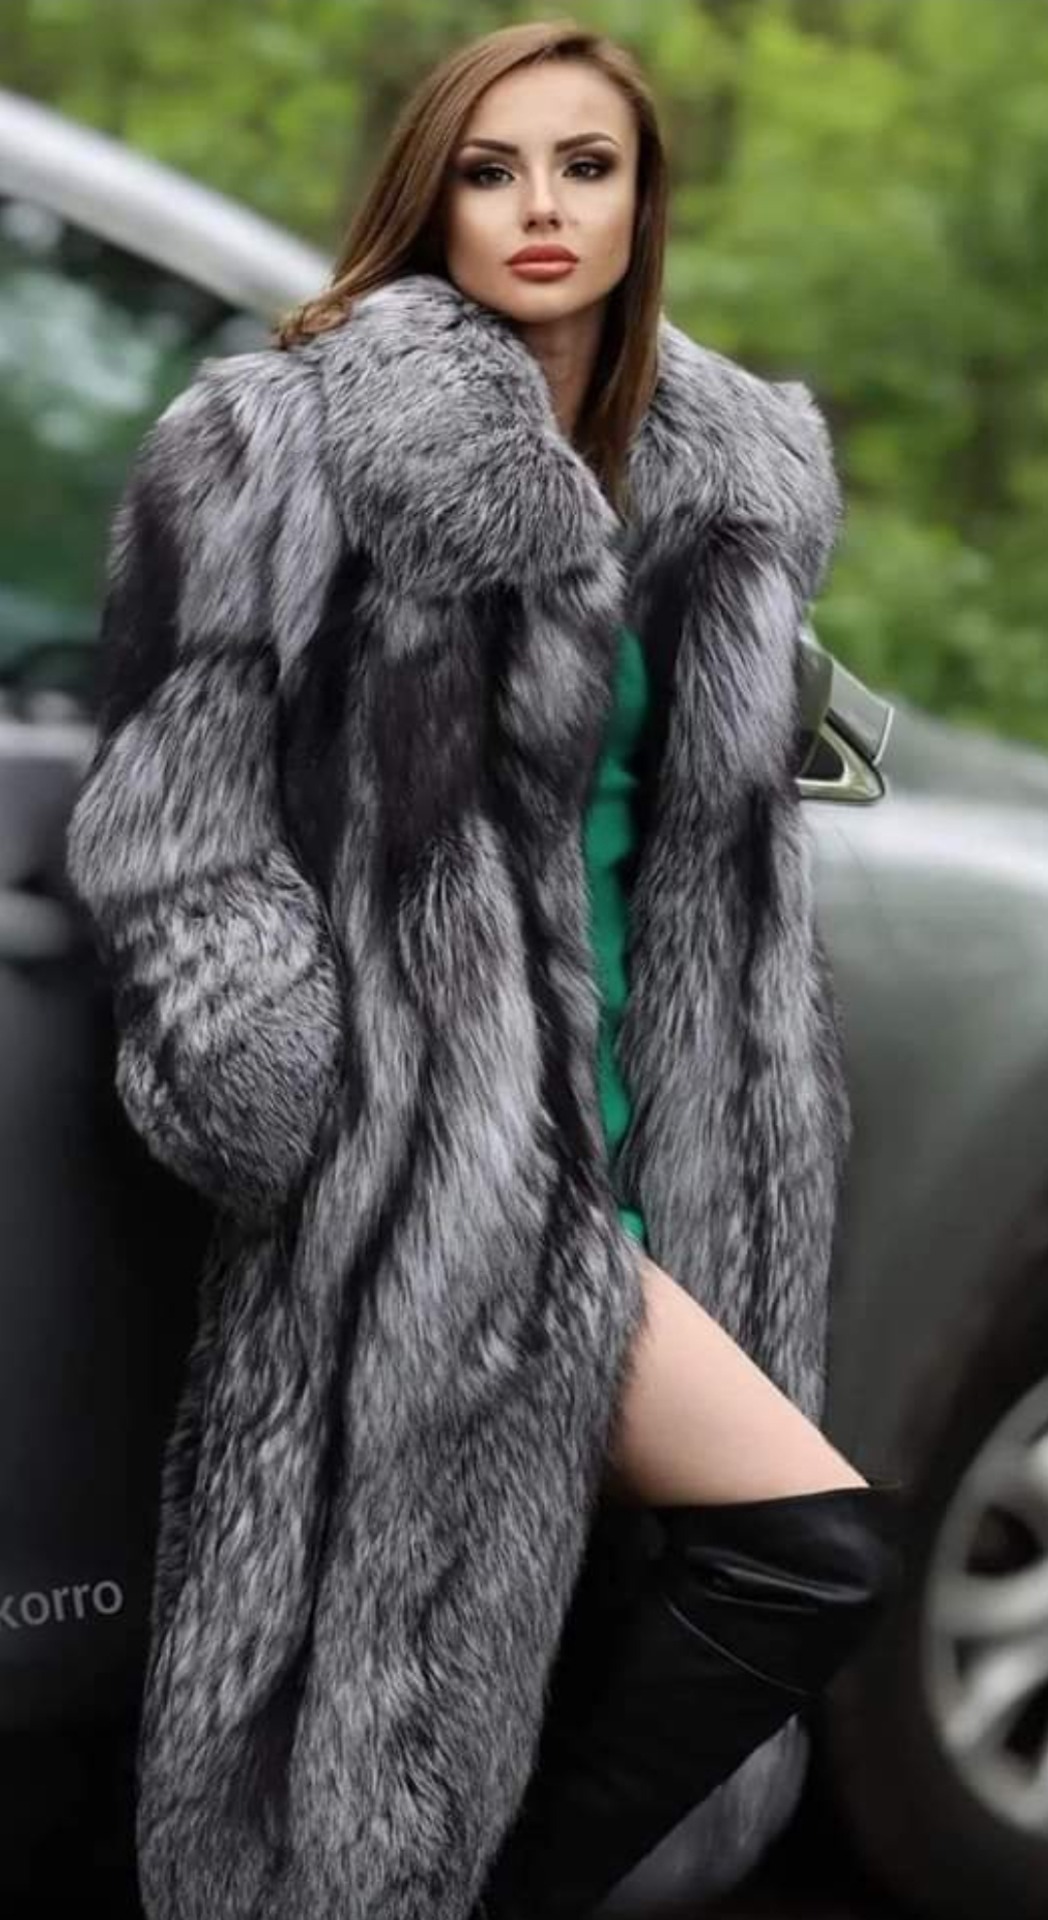 Crossdressing Fur Lover on Tumblr